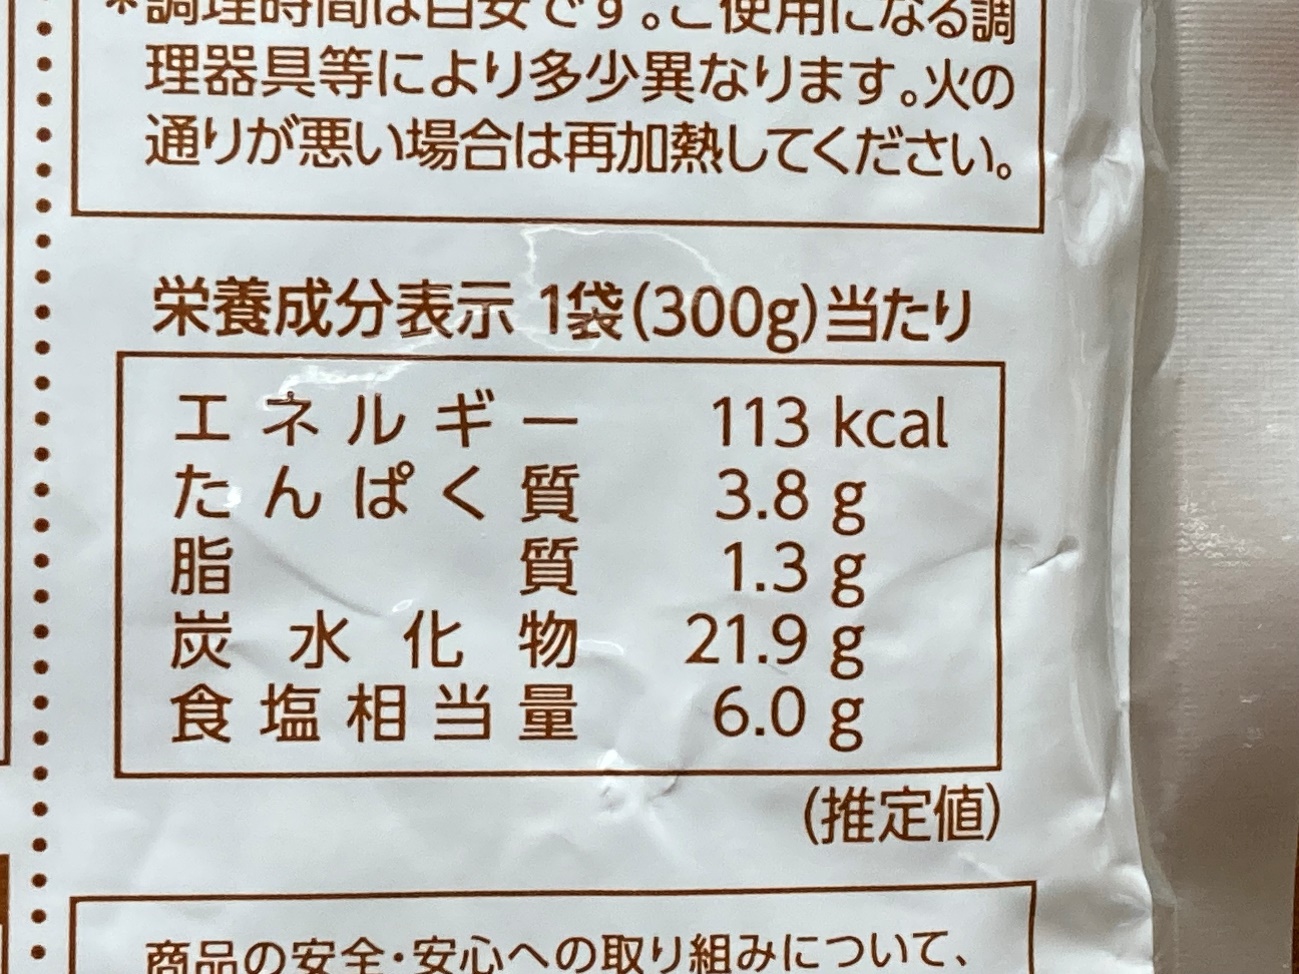 業務スーパーの「おとなの大盛カレーうどんの素」の栄養成分表示